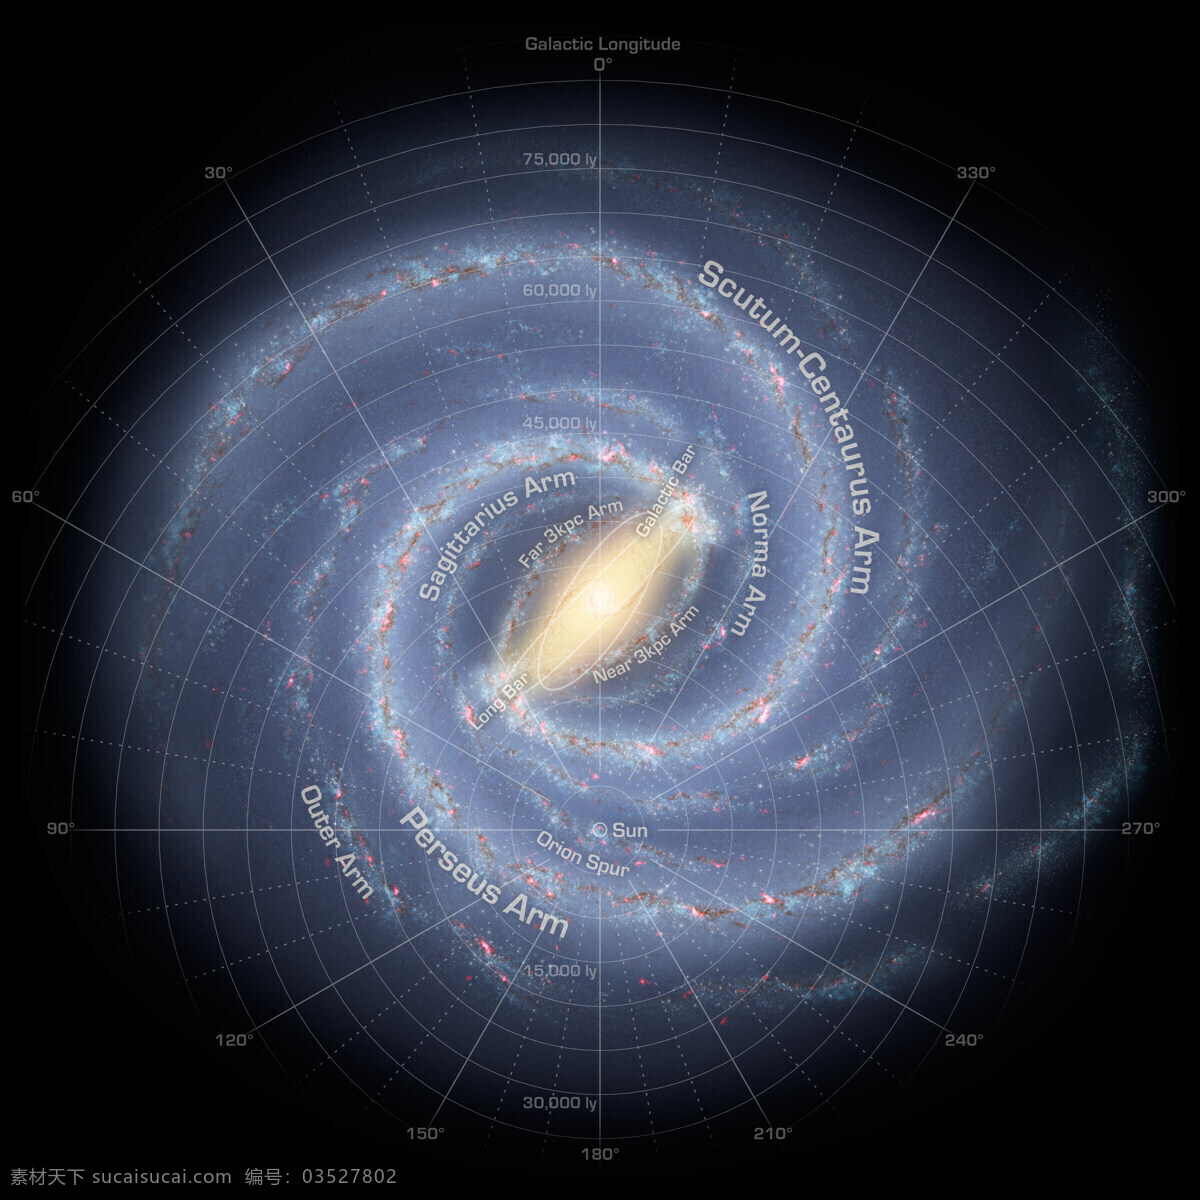 银河系 照片 太阳 太阳系 宇宙 仙女座大星云 现代科技